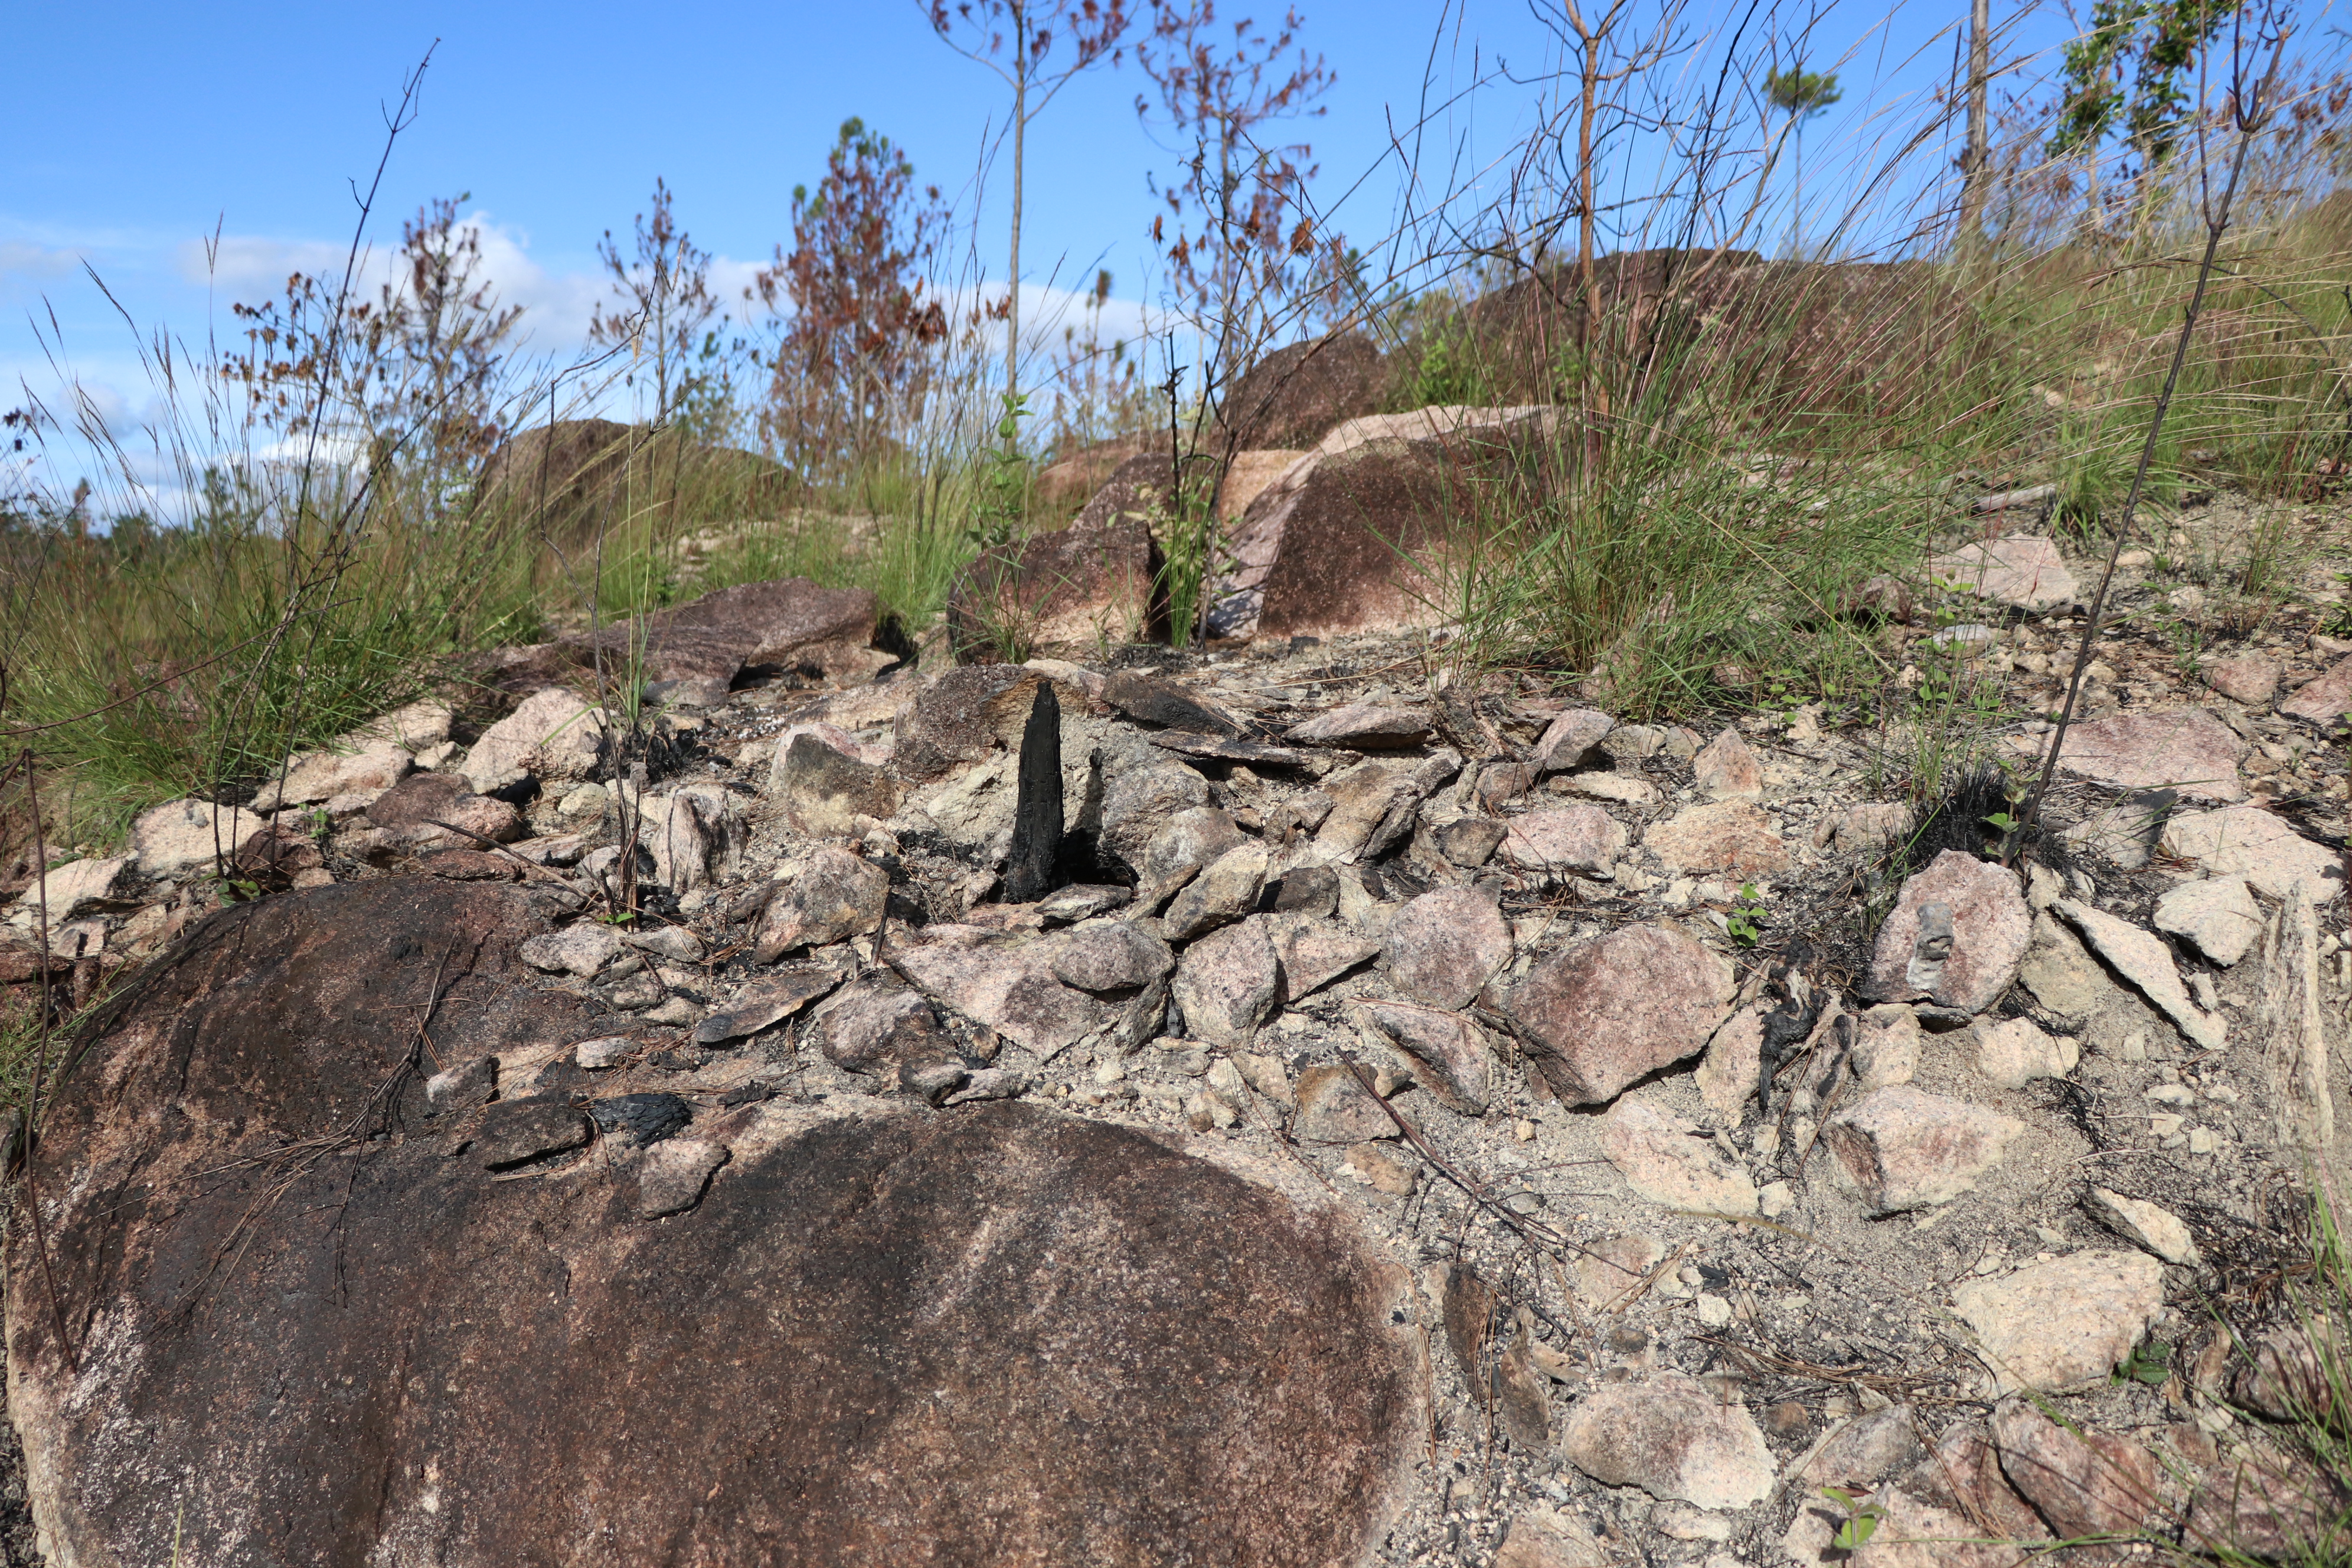 A rock outcrop